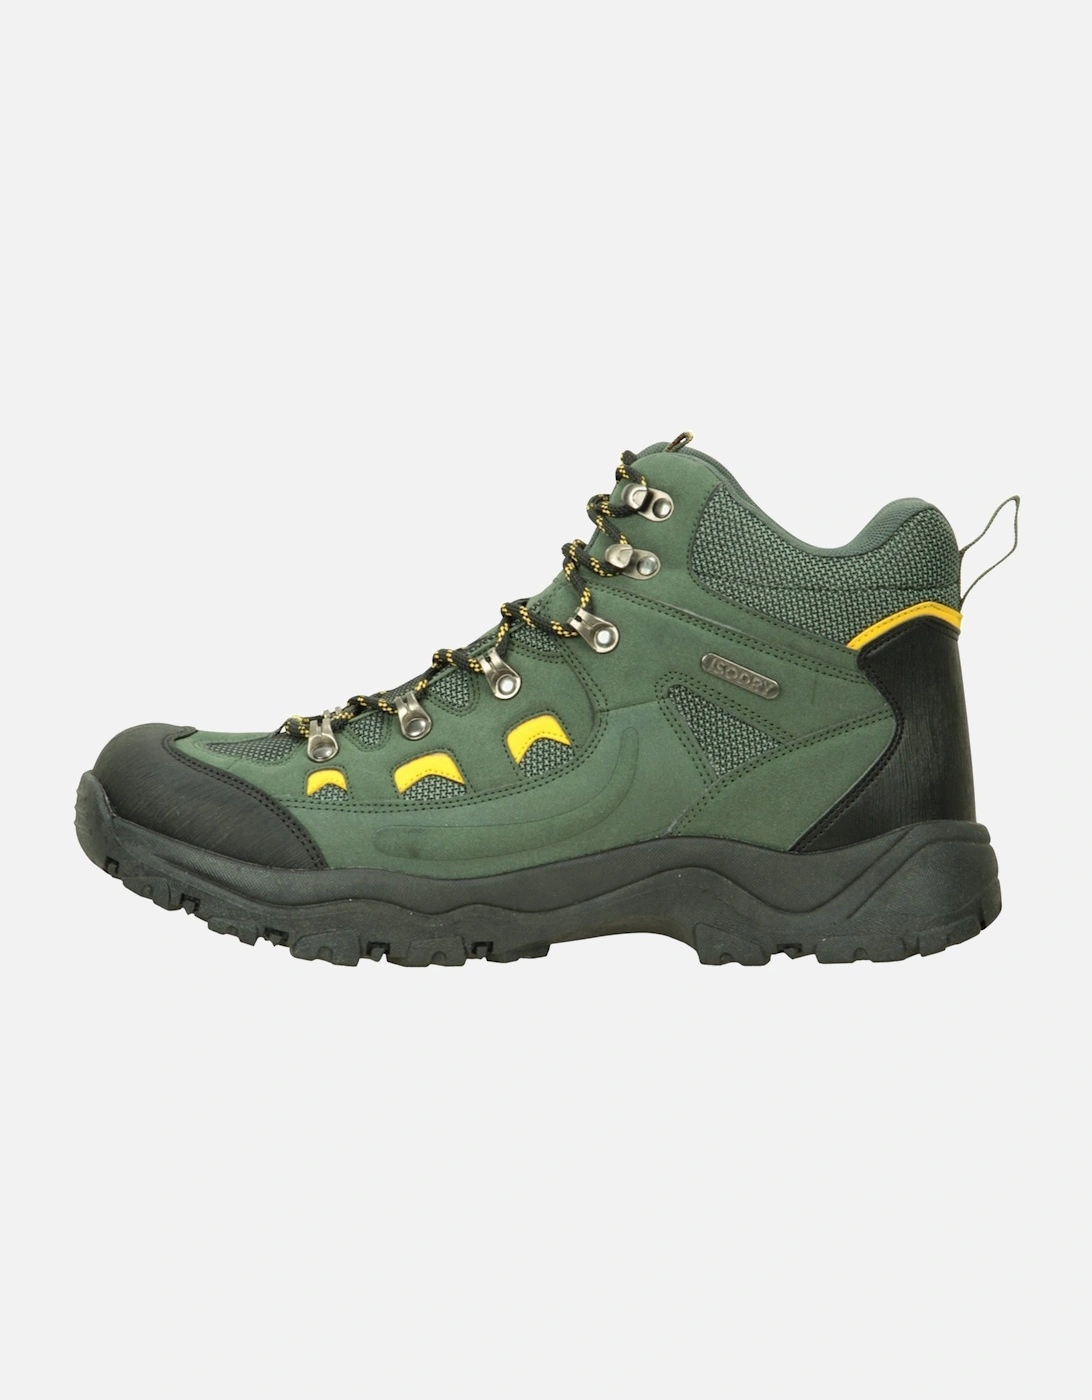 Mens Adventurer Waterproof Boots